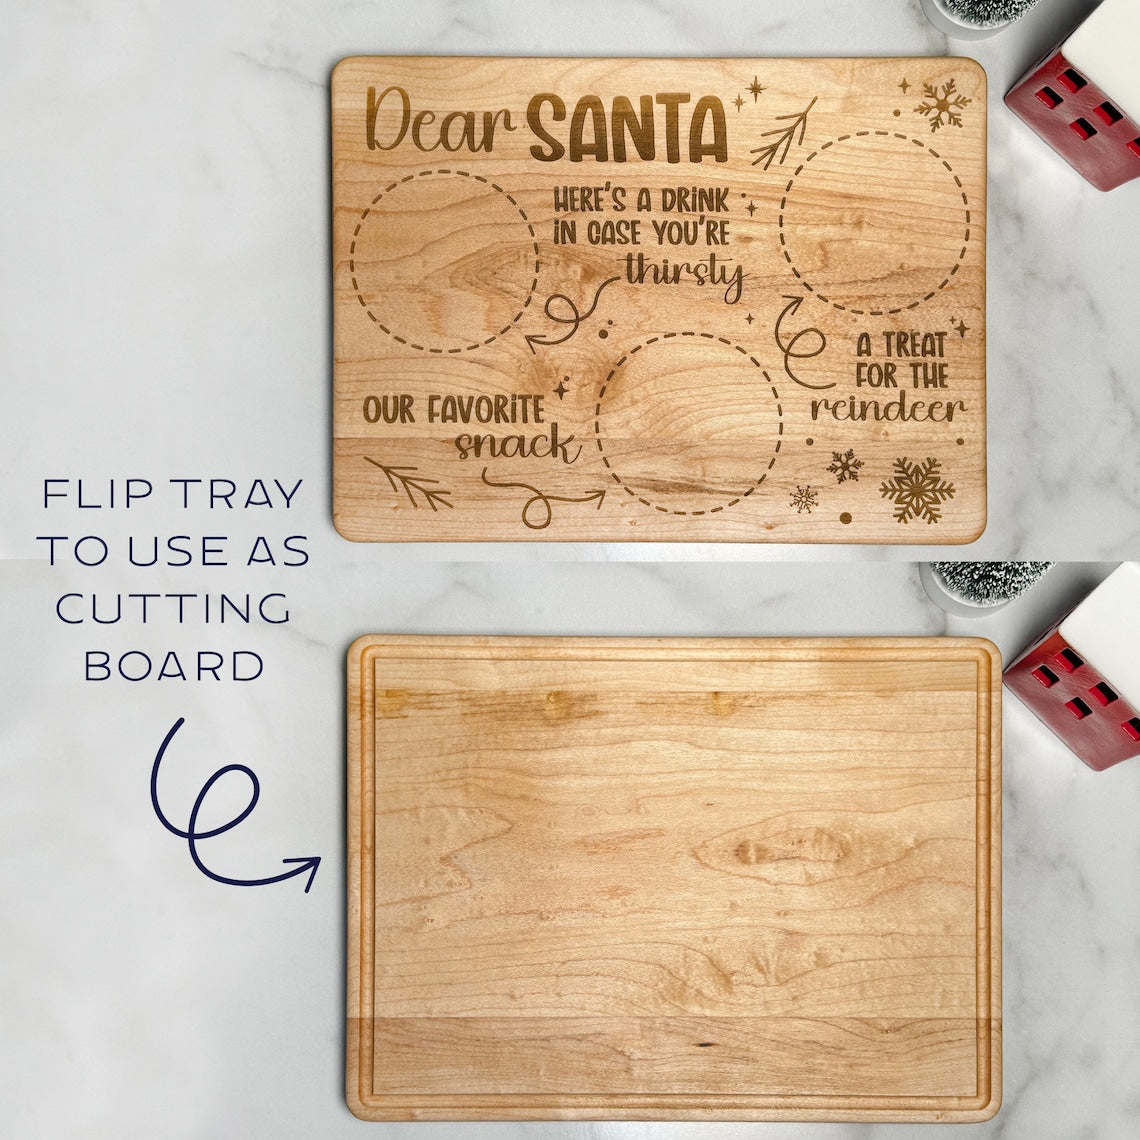 Dear Santa Tray / Cutting Board.